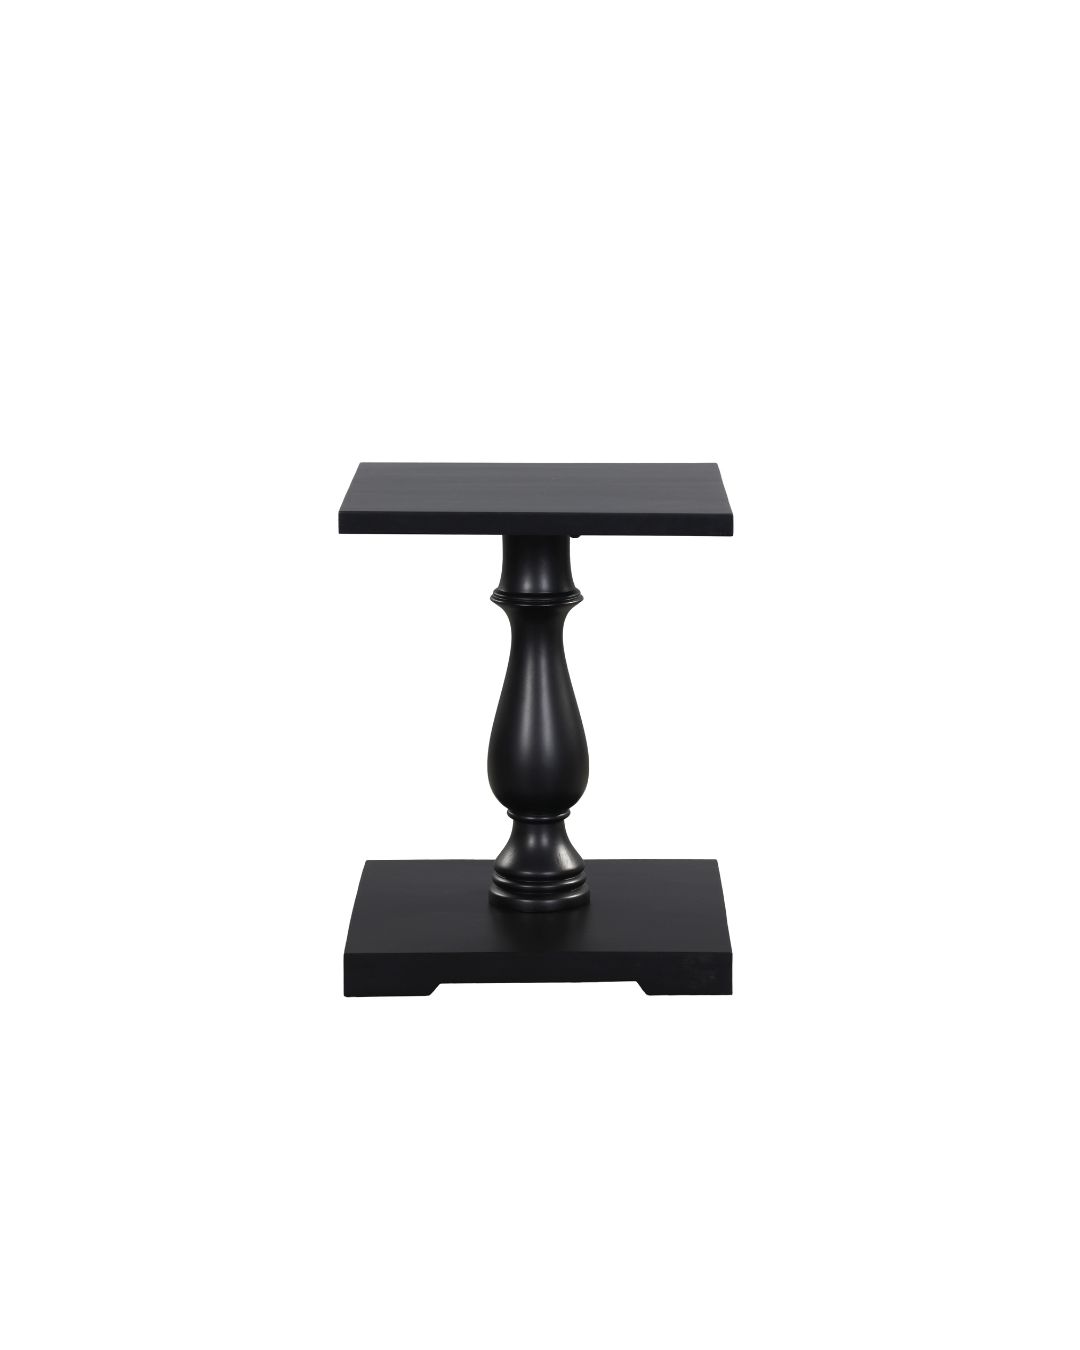 Turnmill Side Table - Black